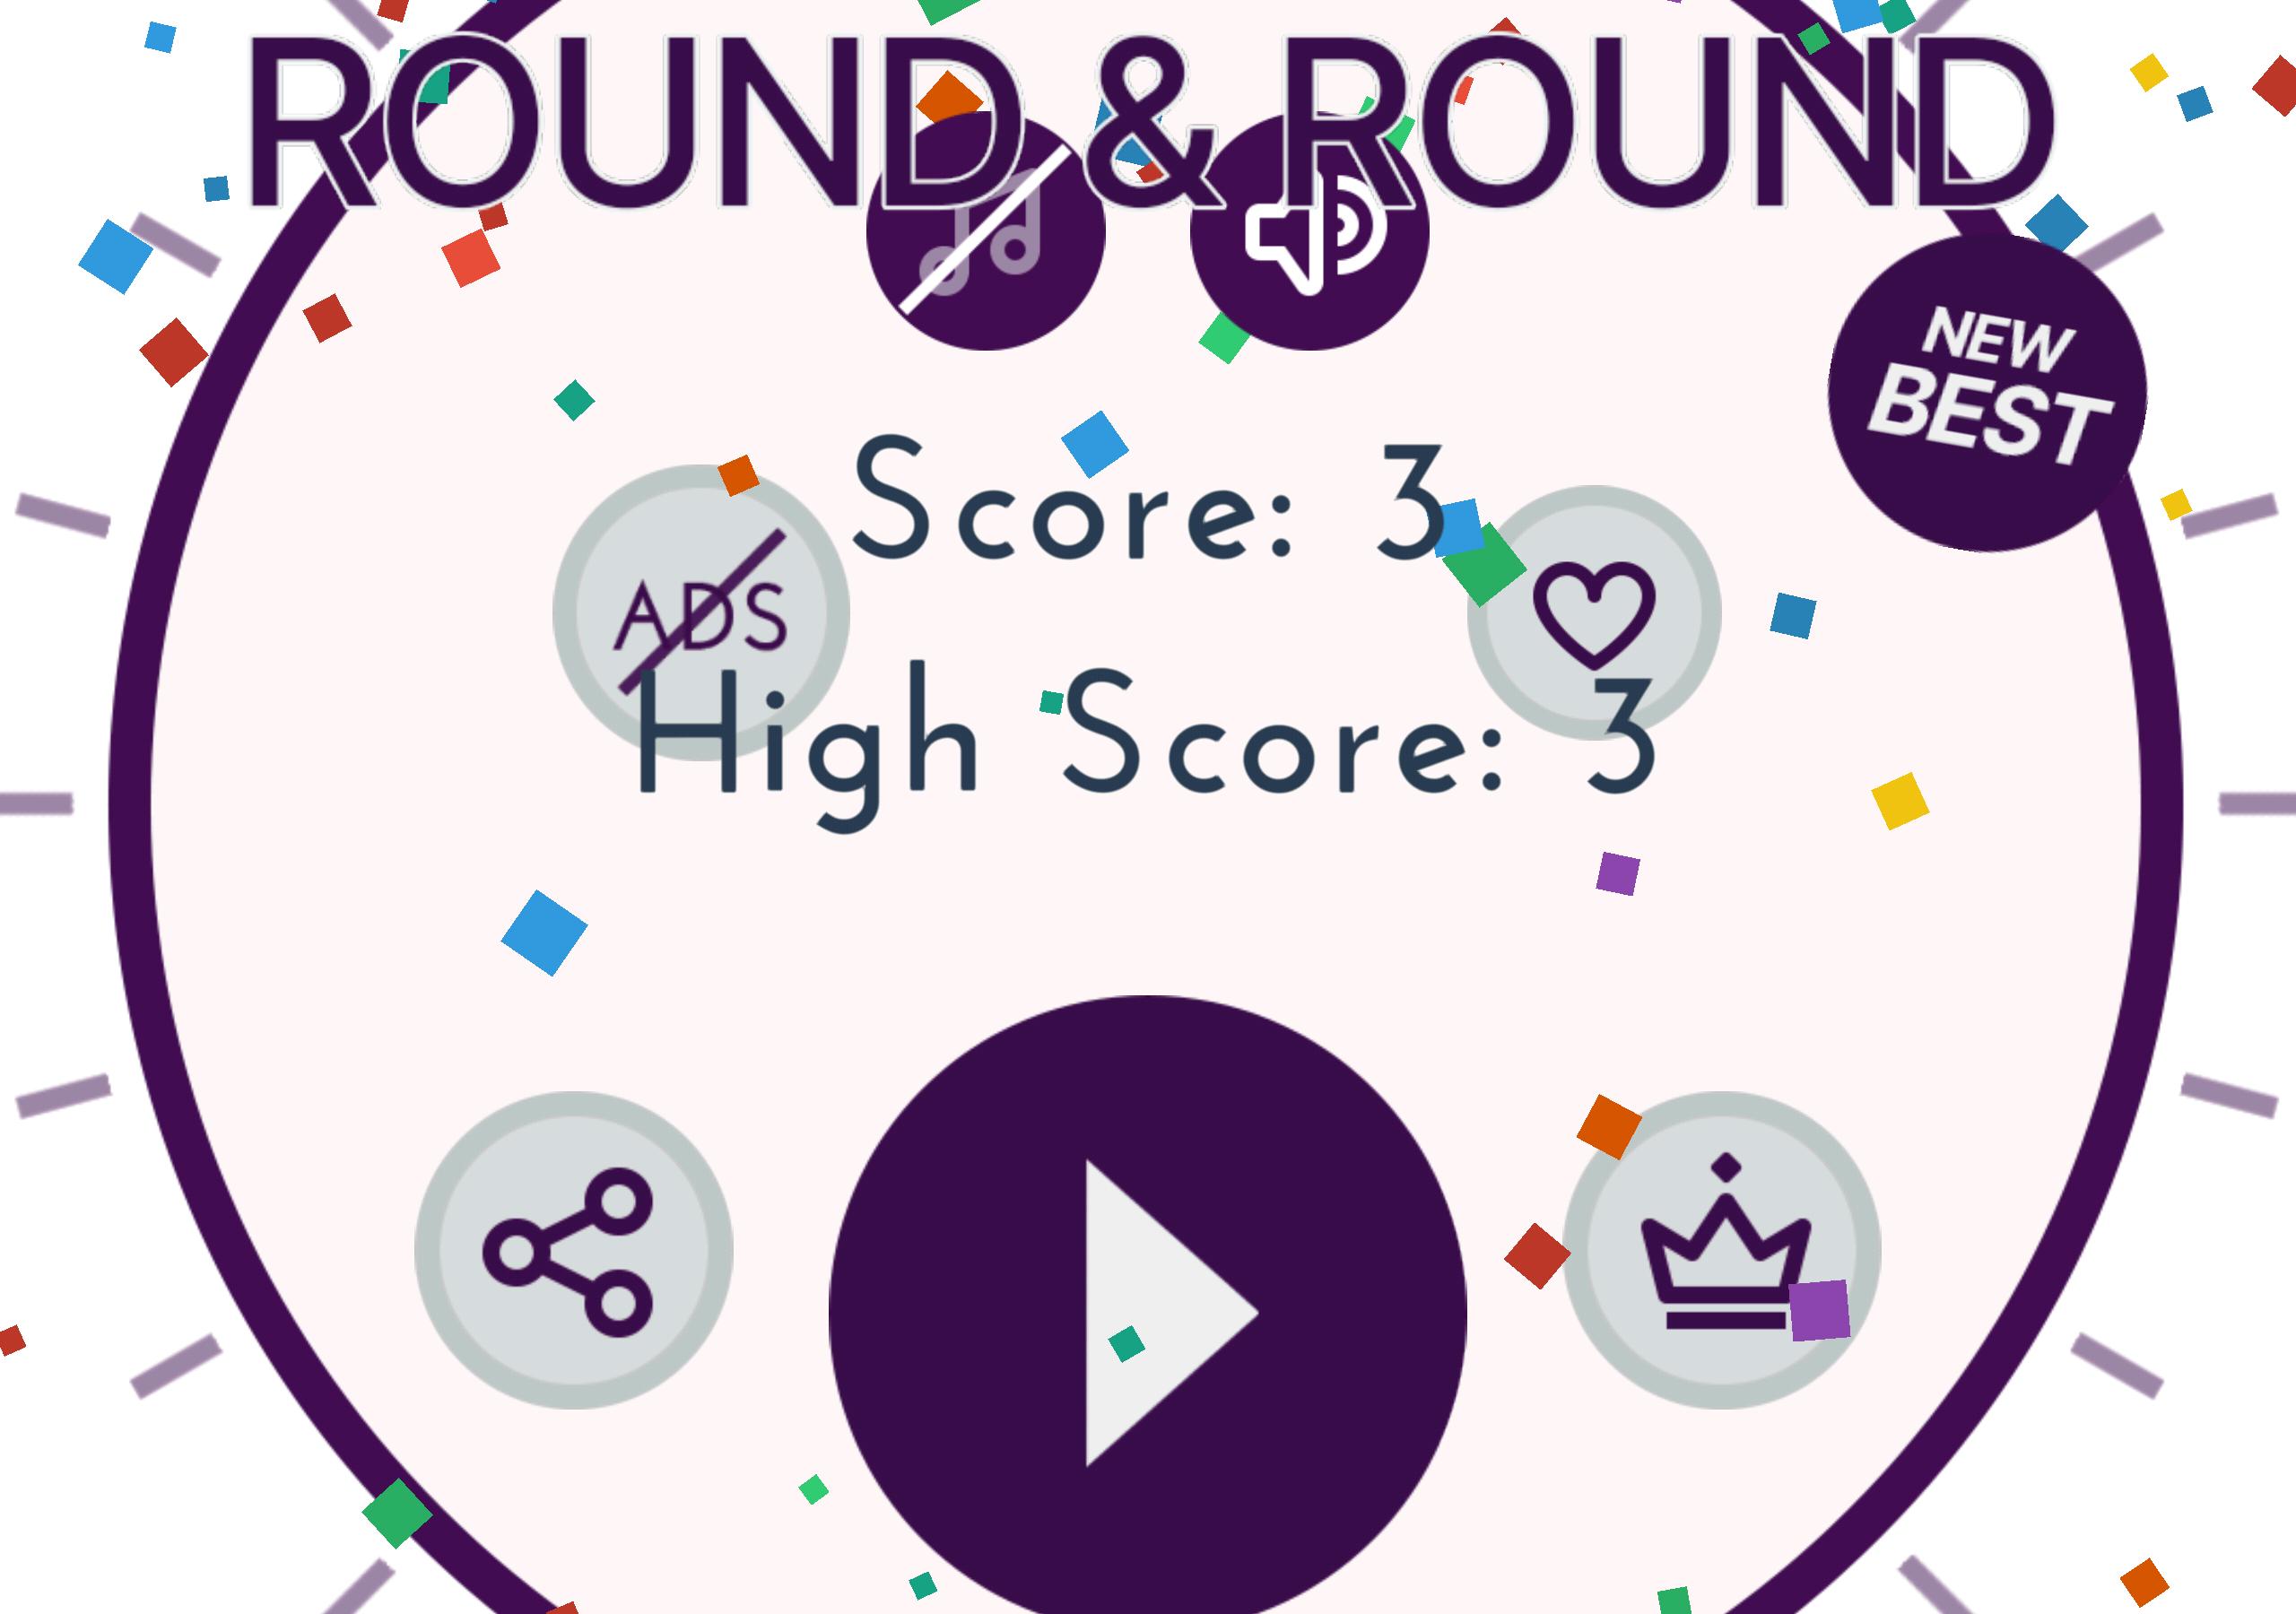 Round and Round. Round Round Round. Round and Round идиома. New order Round & Round. Rounds download